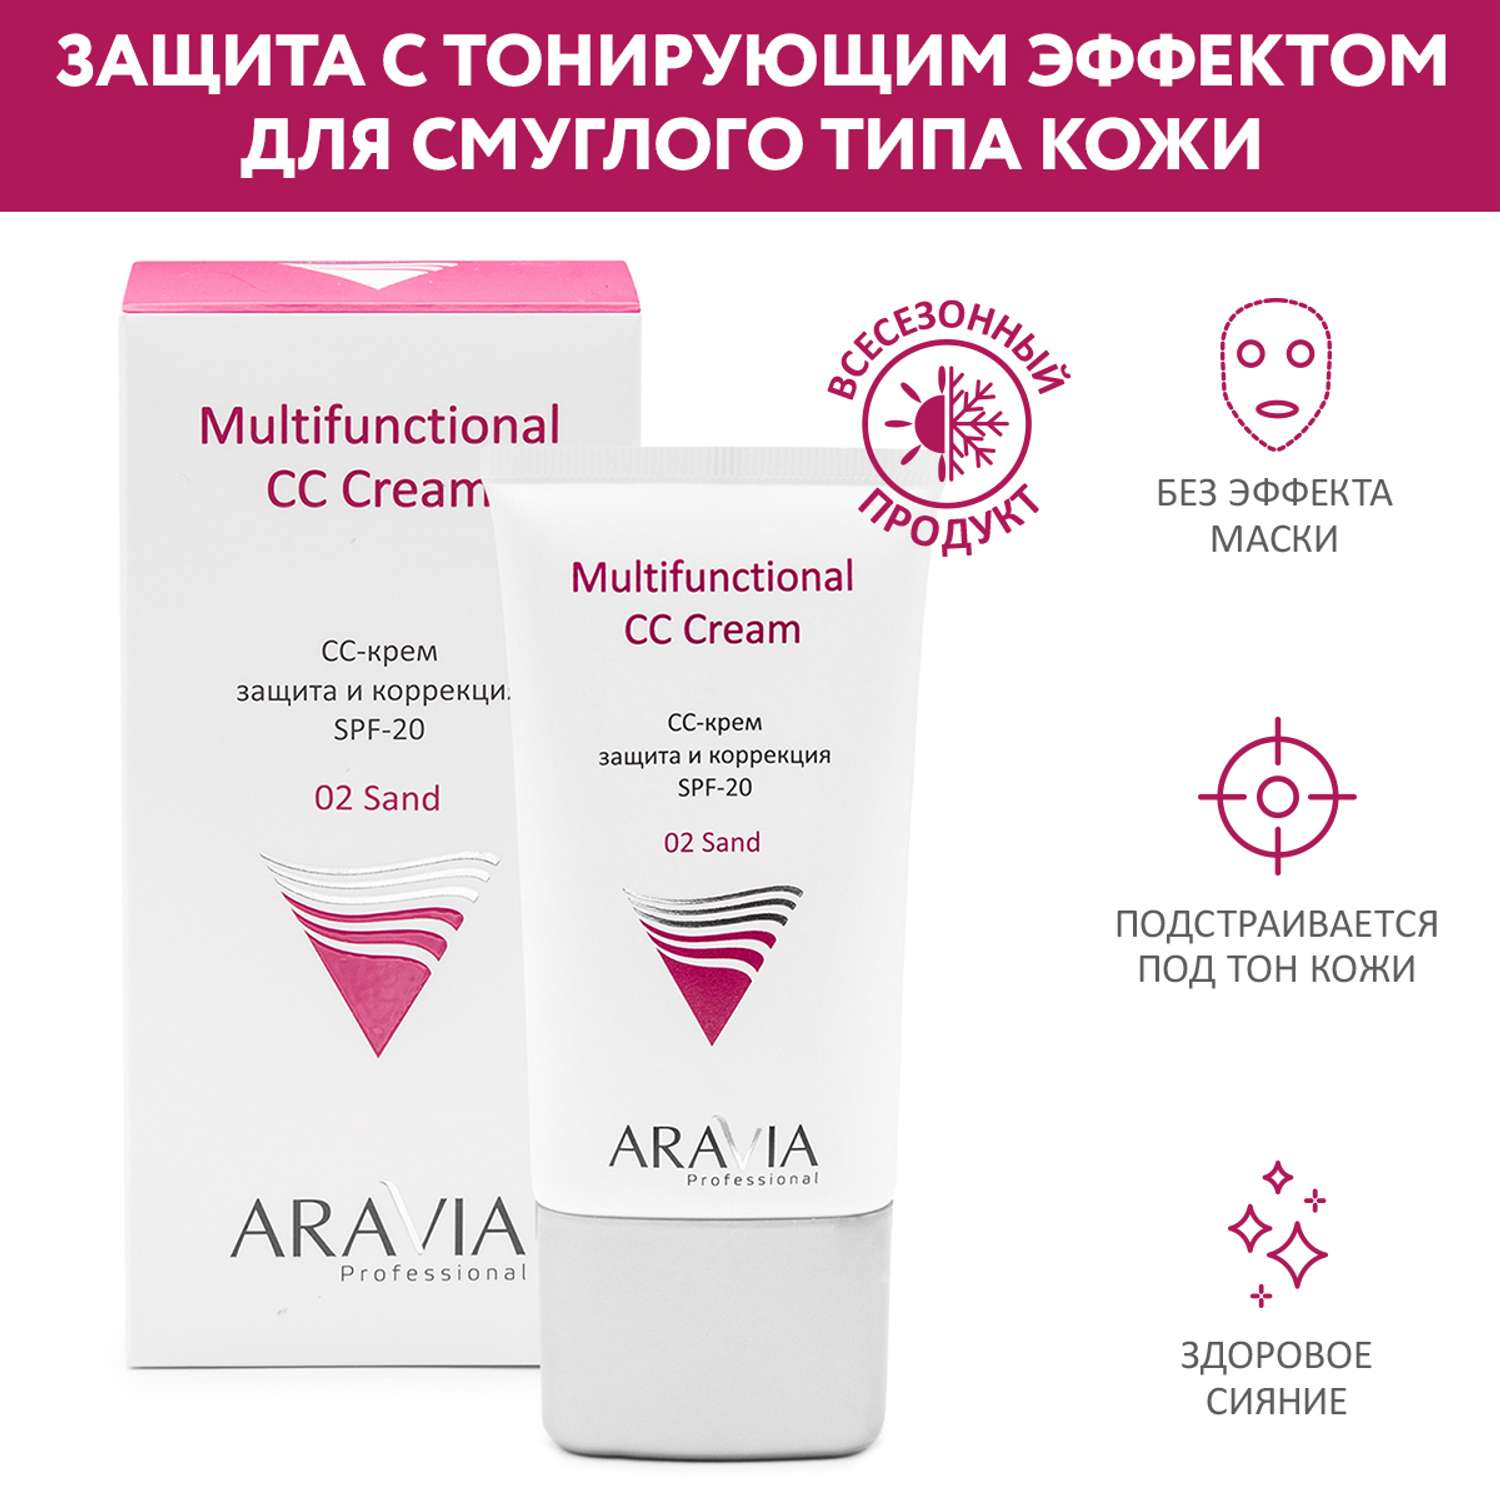 CC-крем ARAVIA Professional защитный SPF-20 для лица Multifunctional CC Cream тон 01 - песочный 50 мл - фото 1